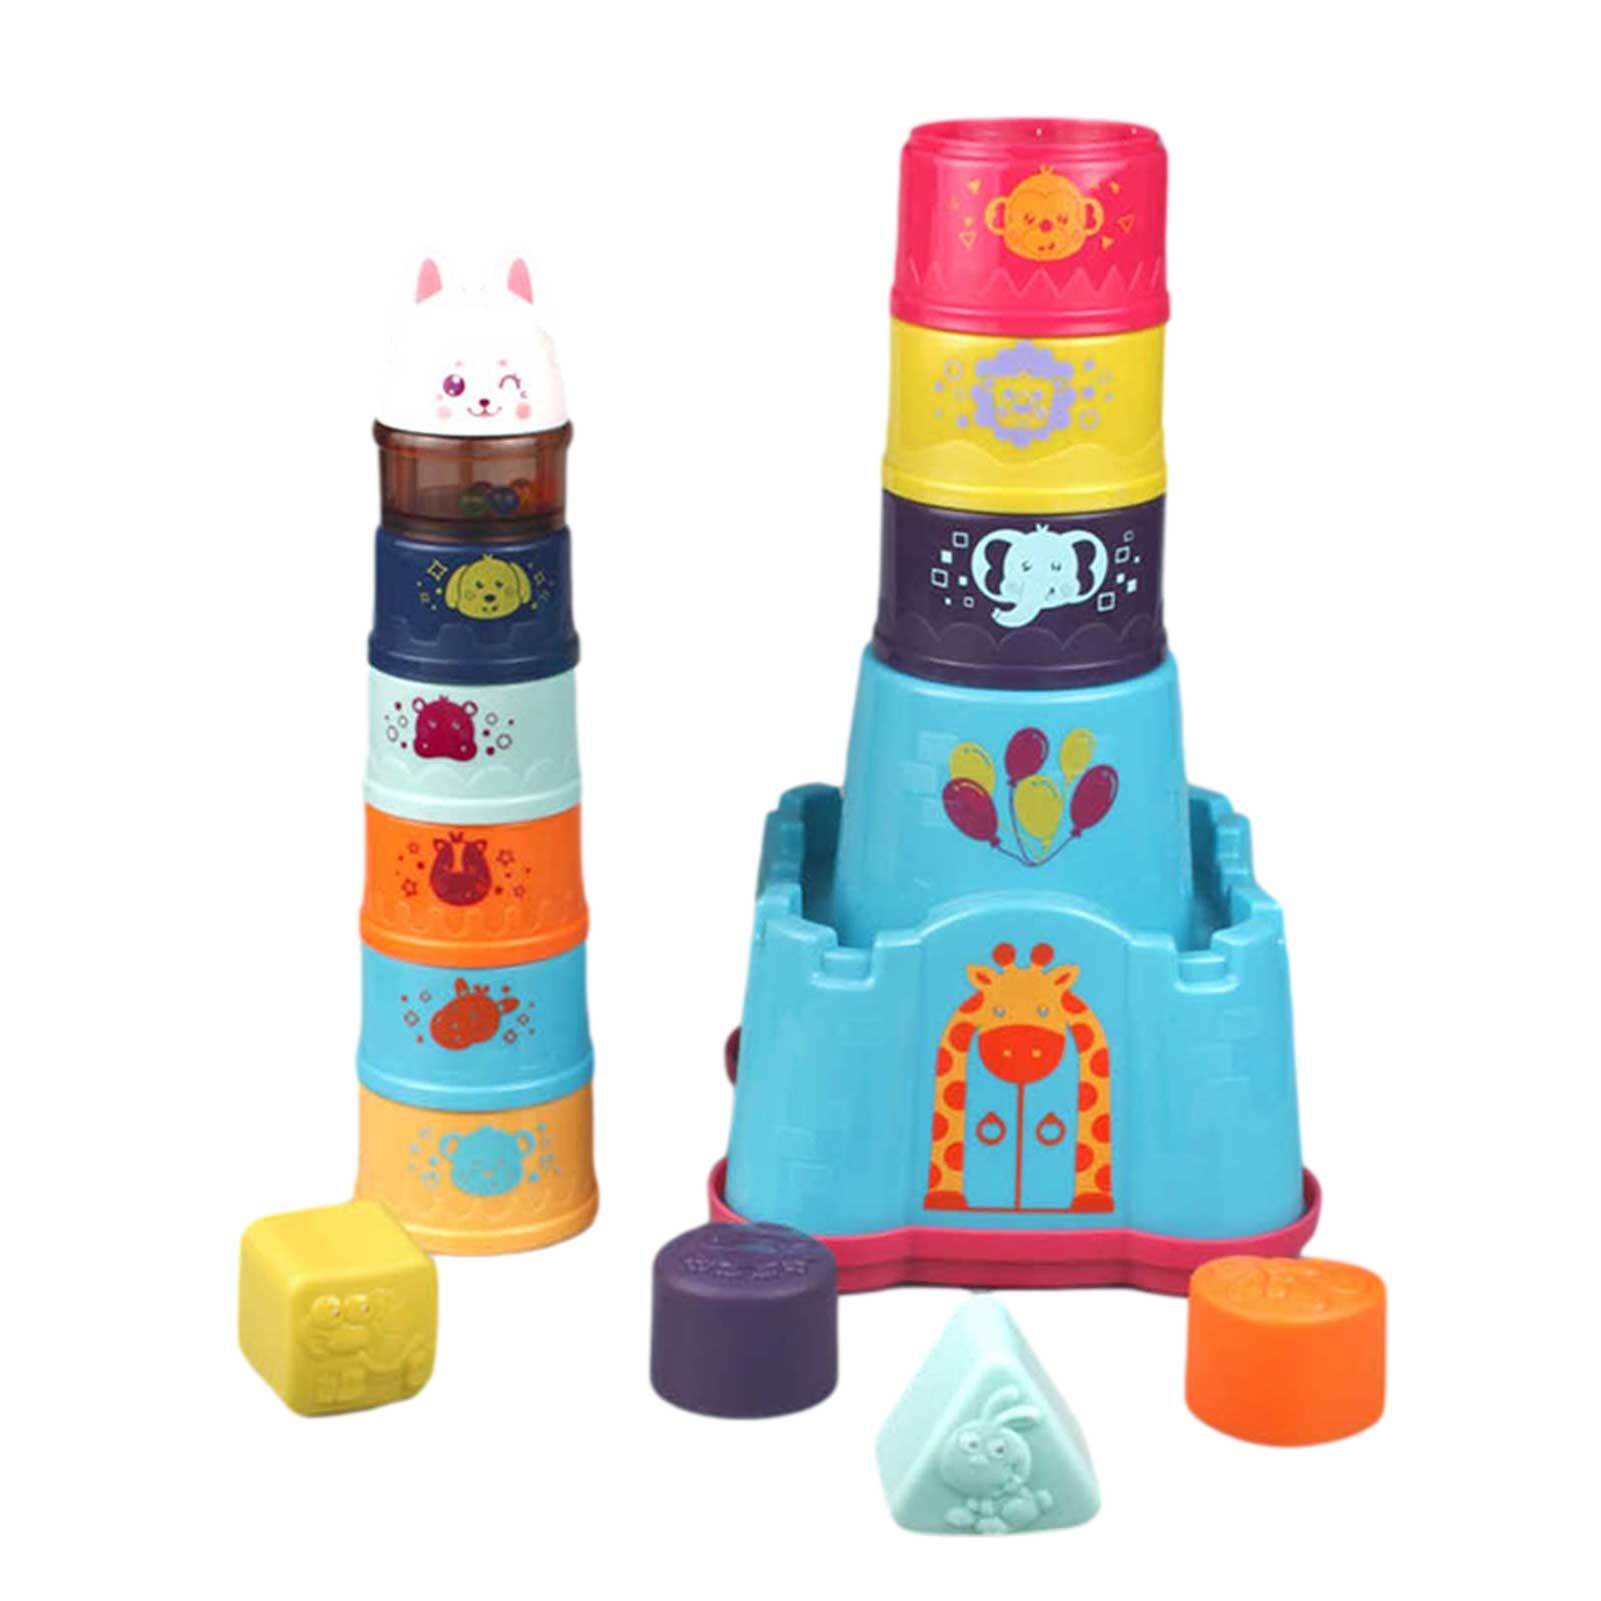 Tower toys. 2 Башни игрушки.